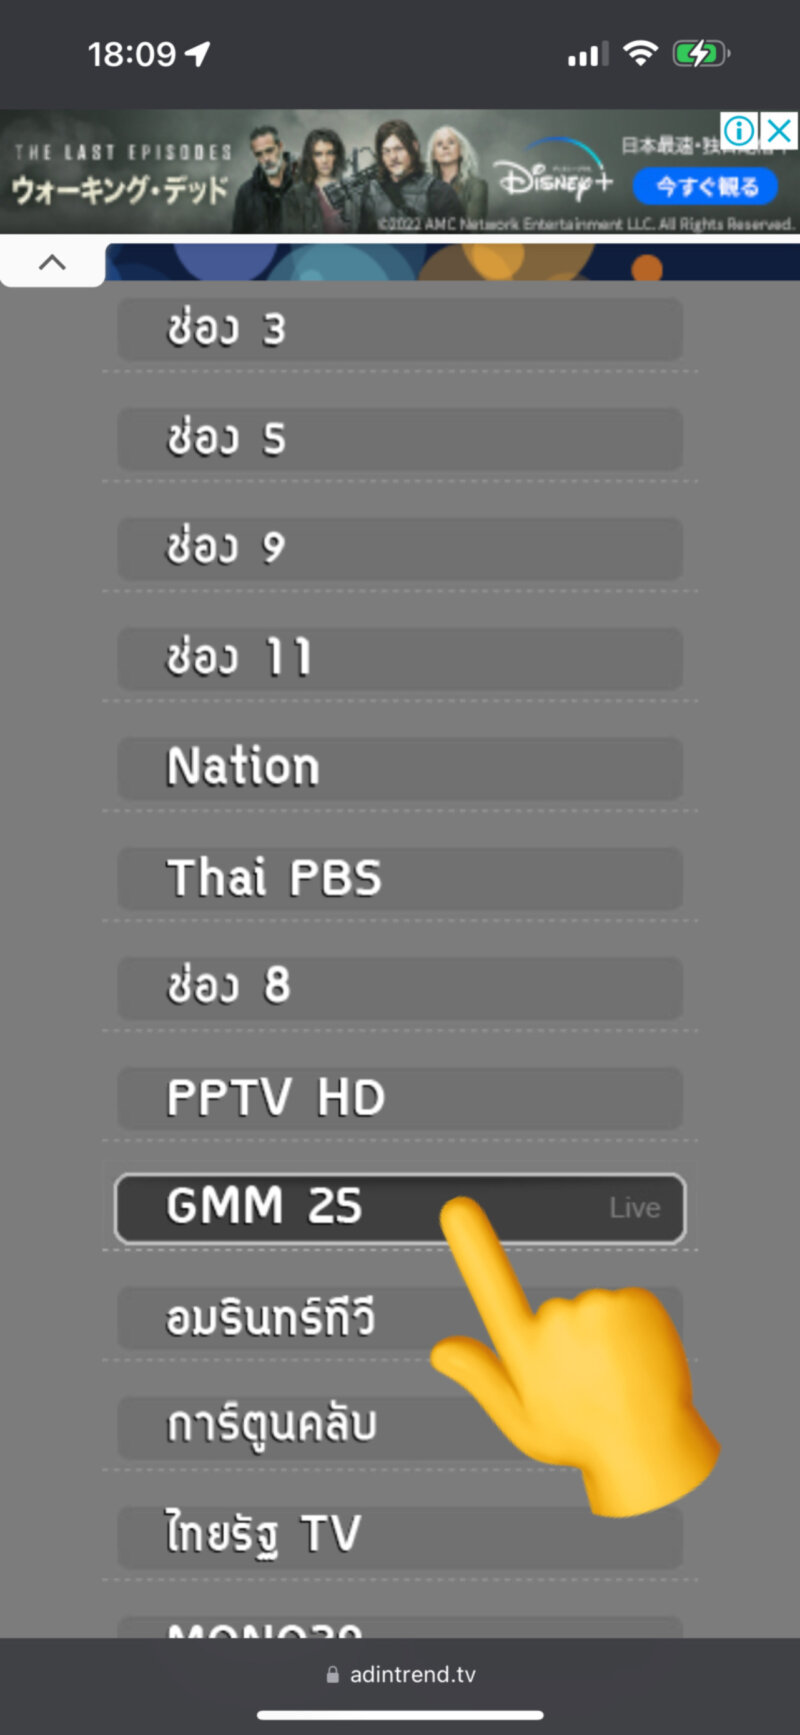 gmm25視聴方法